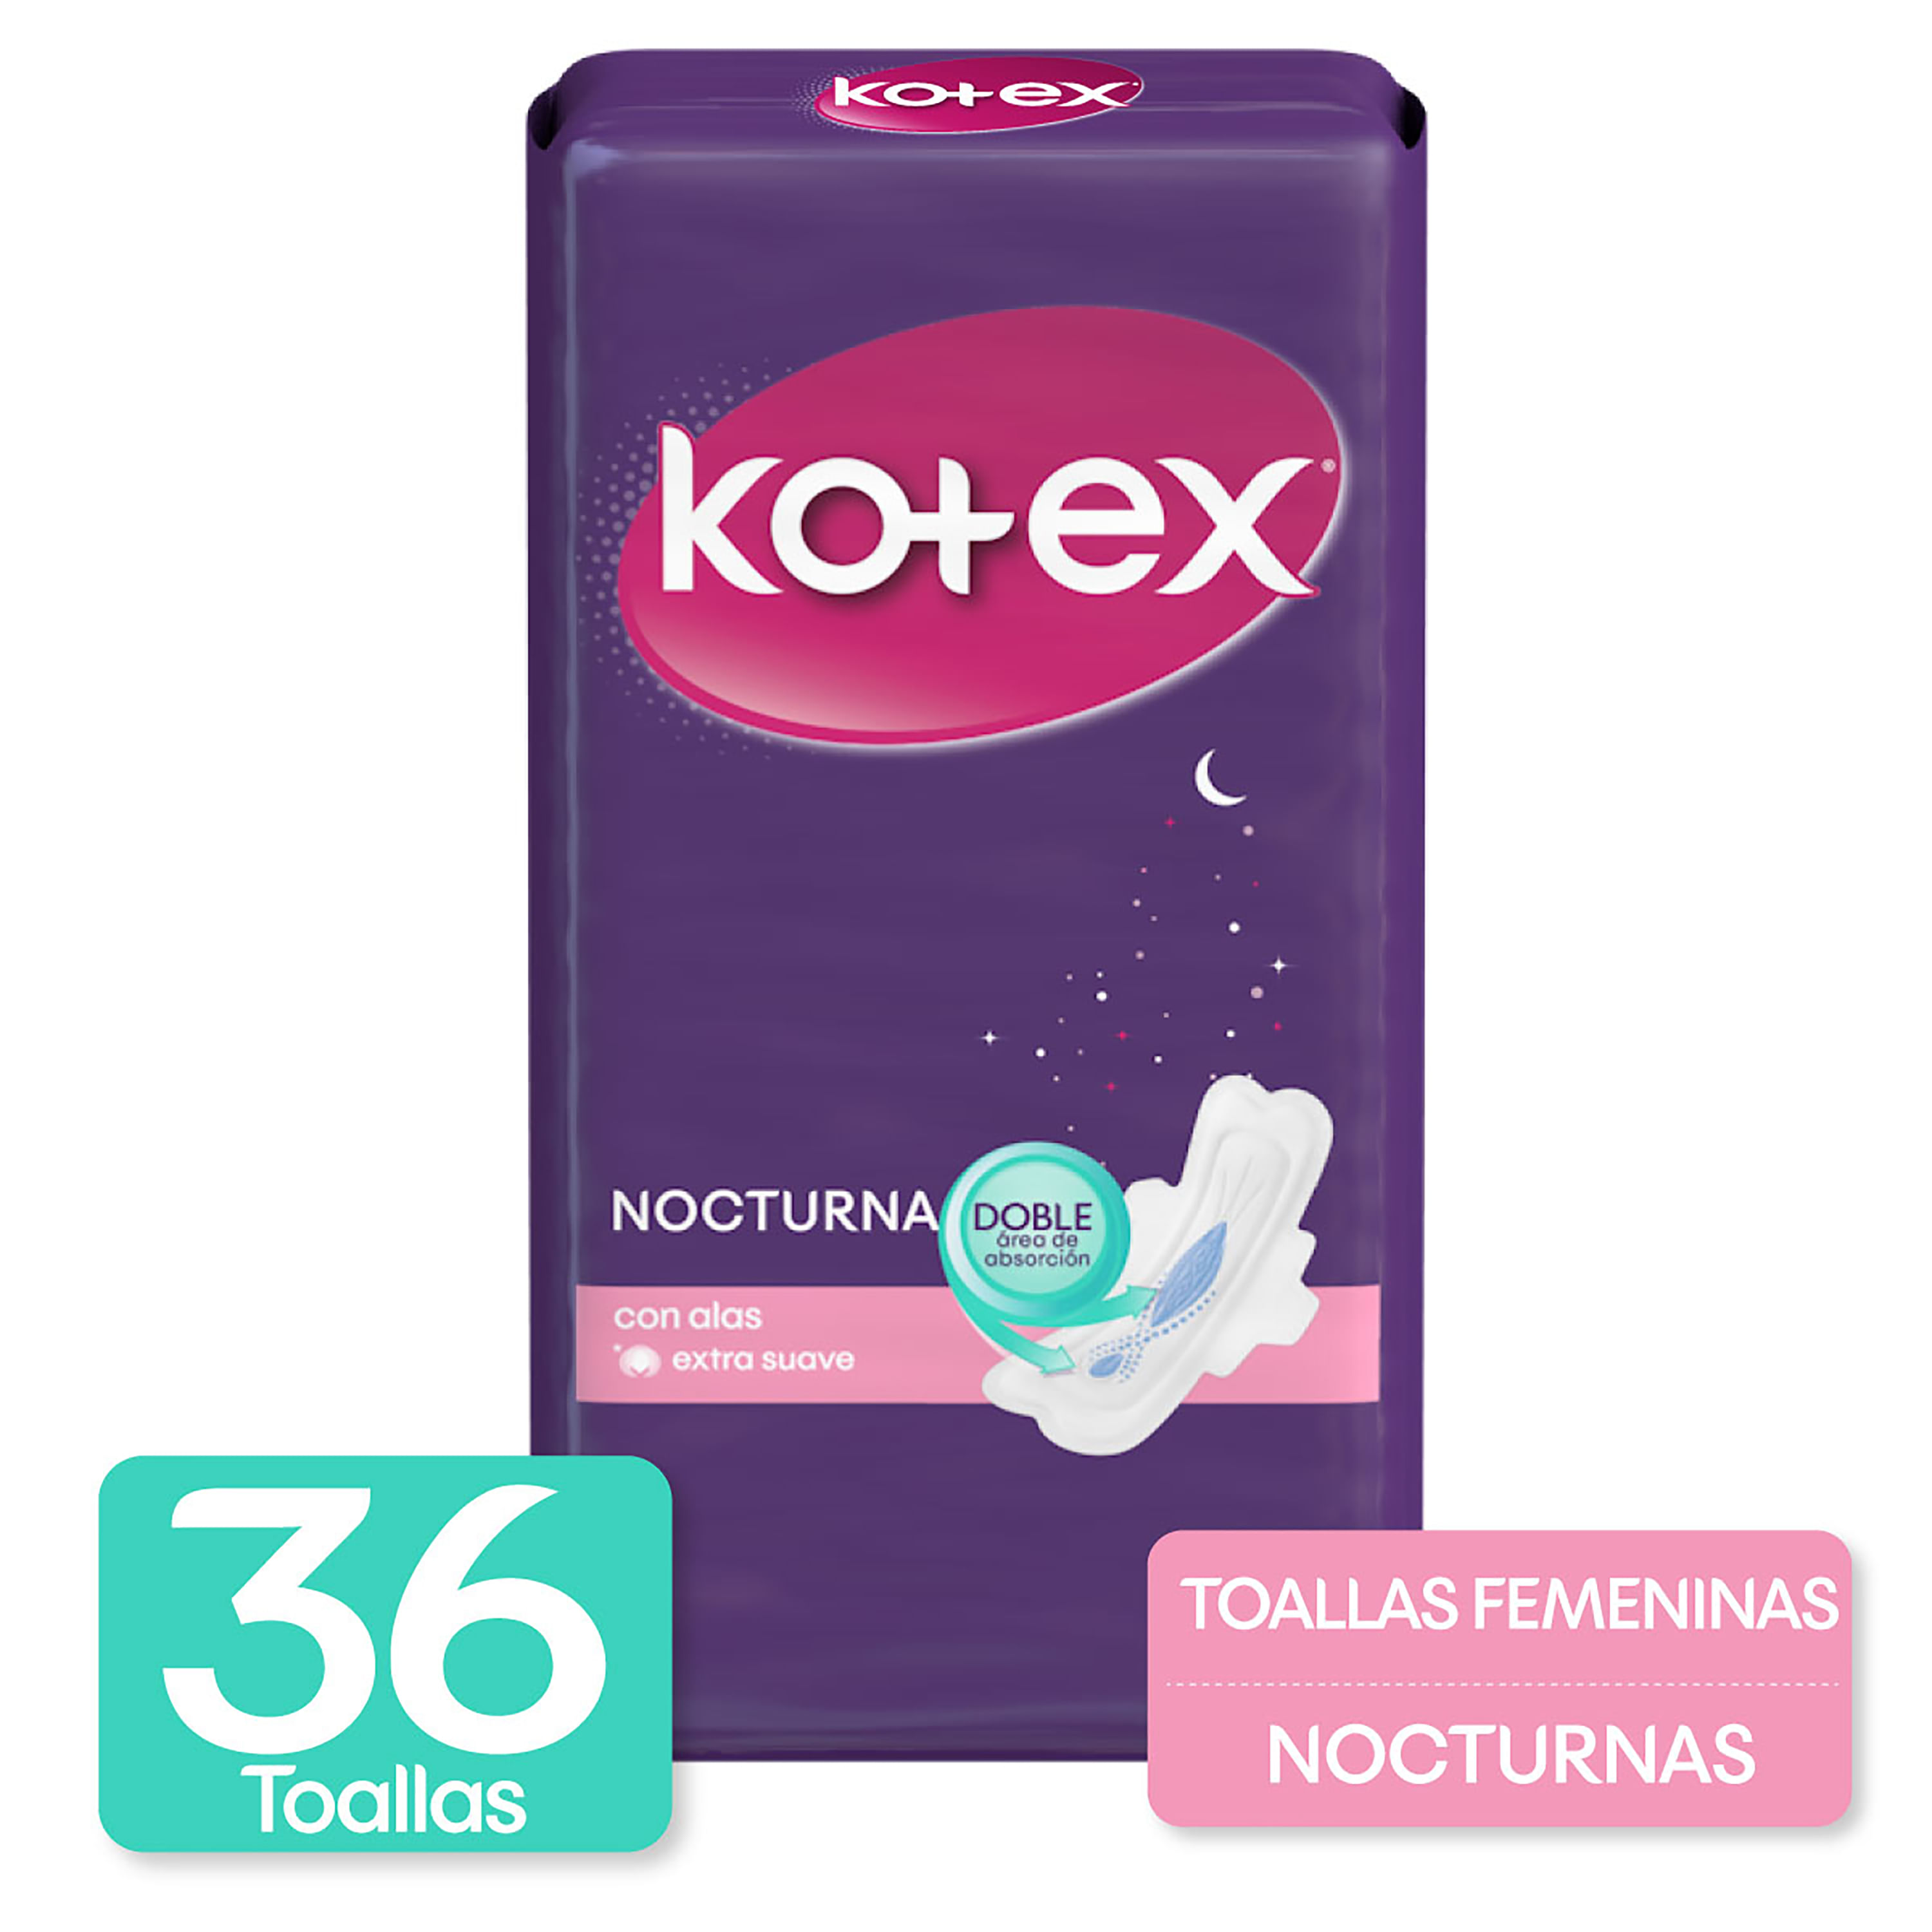 Toallas-Femeninas-Marca-Kotex-Nocturna-Con-Alas-36Uds-1-34580